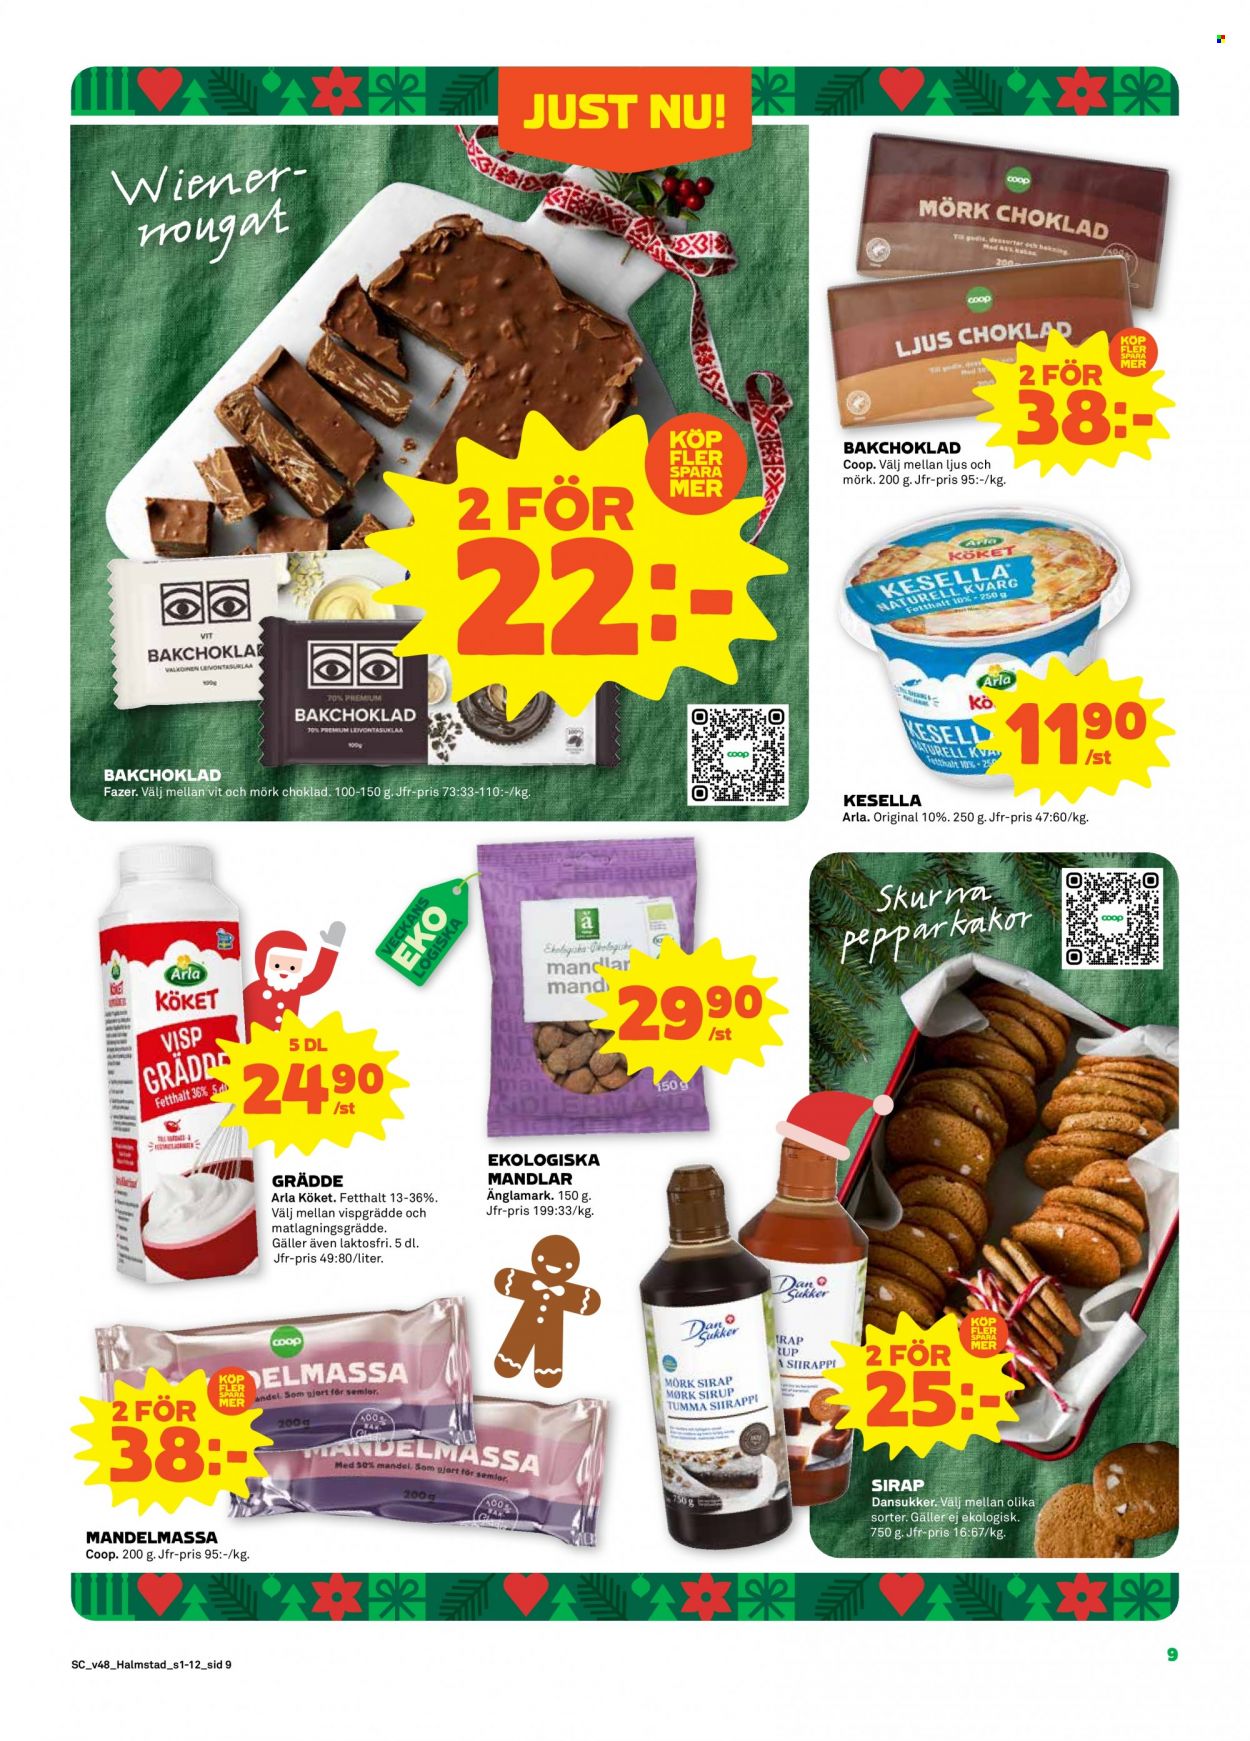 thumbnail - Stora Coop reklamblad - 28/11 2022 - 4/12 2022 - varor från reklamblad - Fazer, Arla, visp grädde, grädde, matlagningsgrädde, pepparkakor, choklad, mandelmassa. Sida 9.